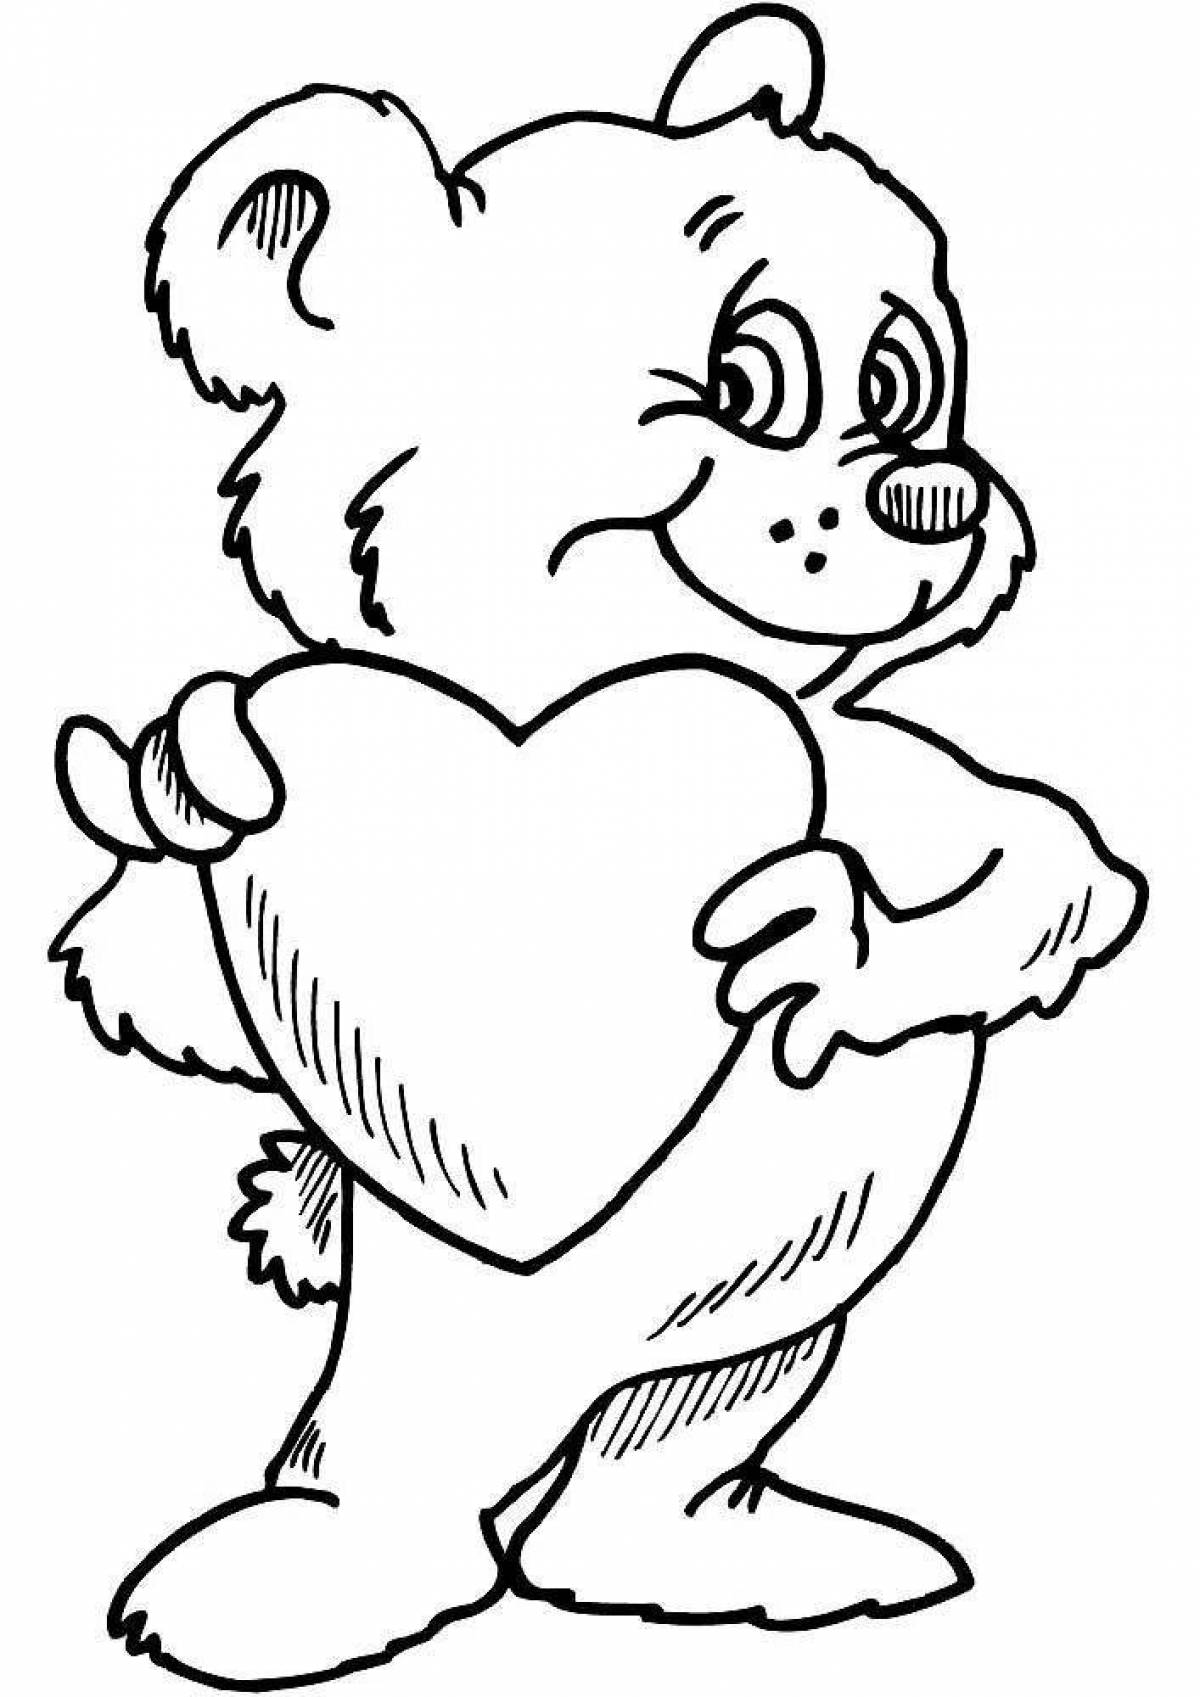 Bear with heart #3